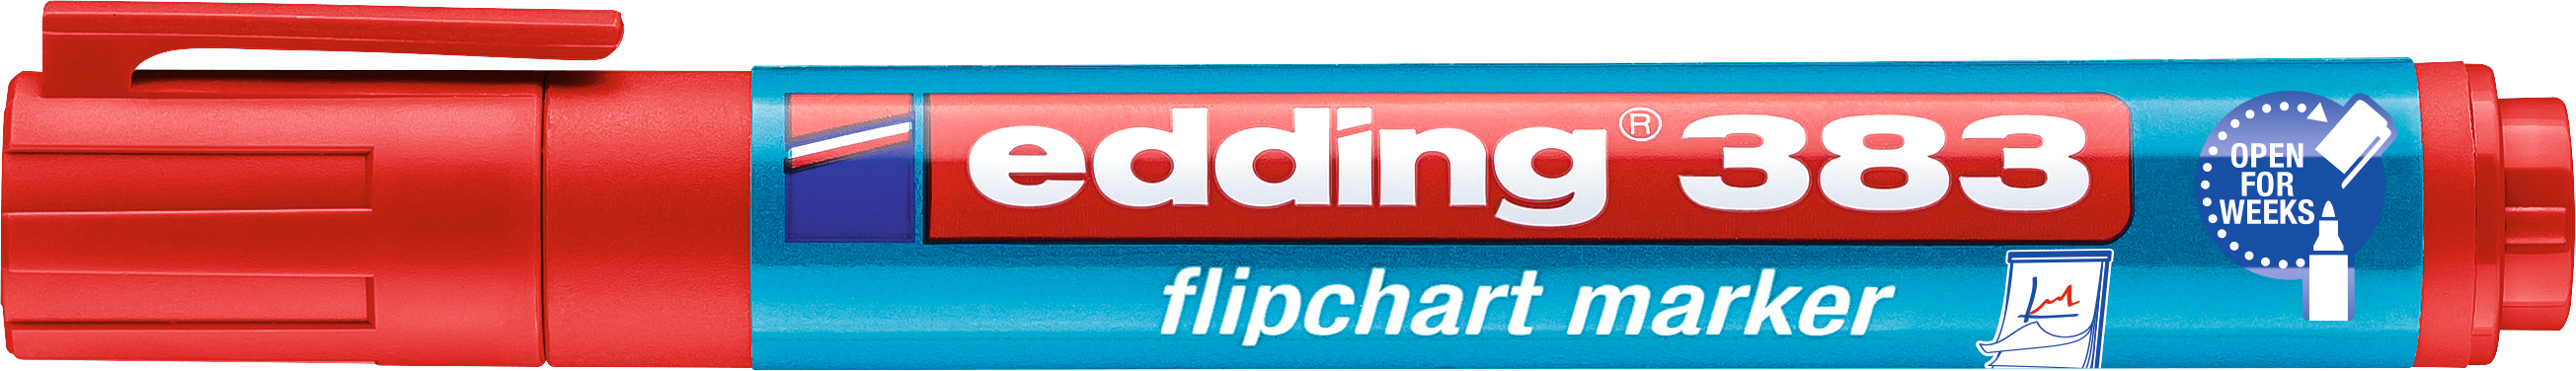 EDDING Flipchart Marker 383 1-5mm 383-2 rouge